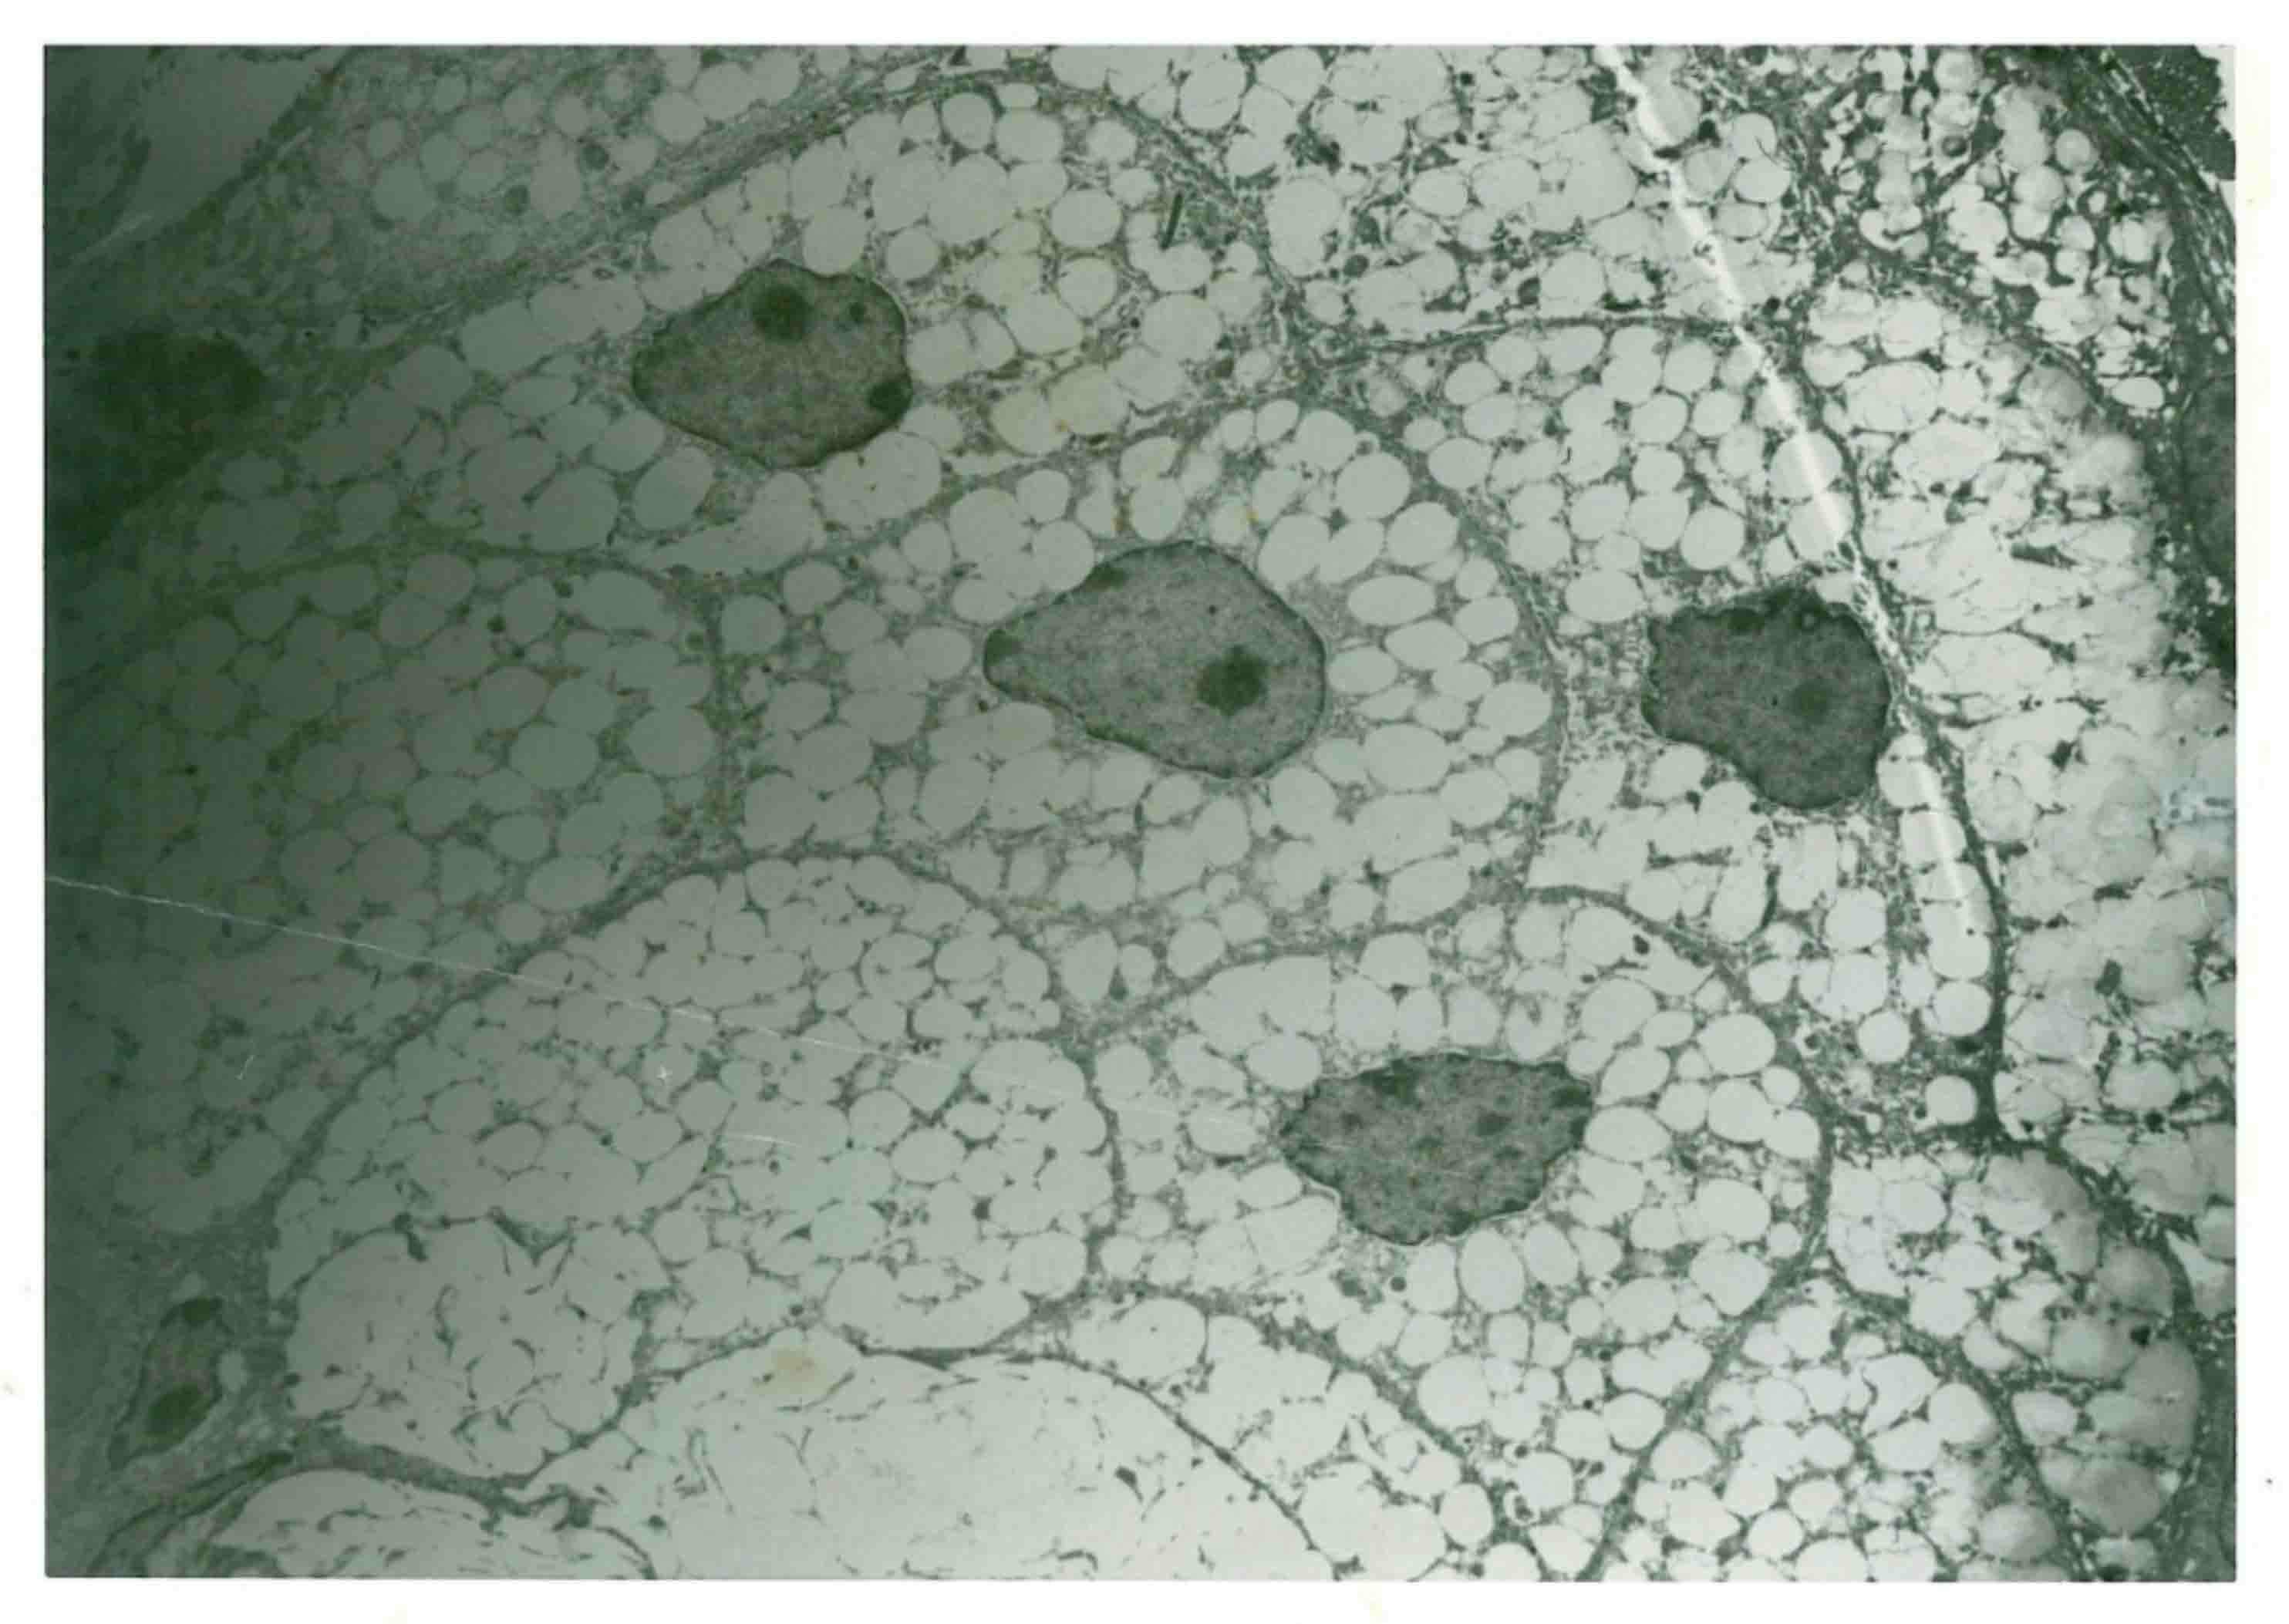 image of a sebaceous gland illustrating the sebocytes